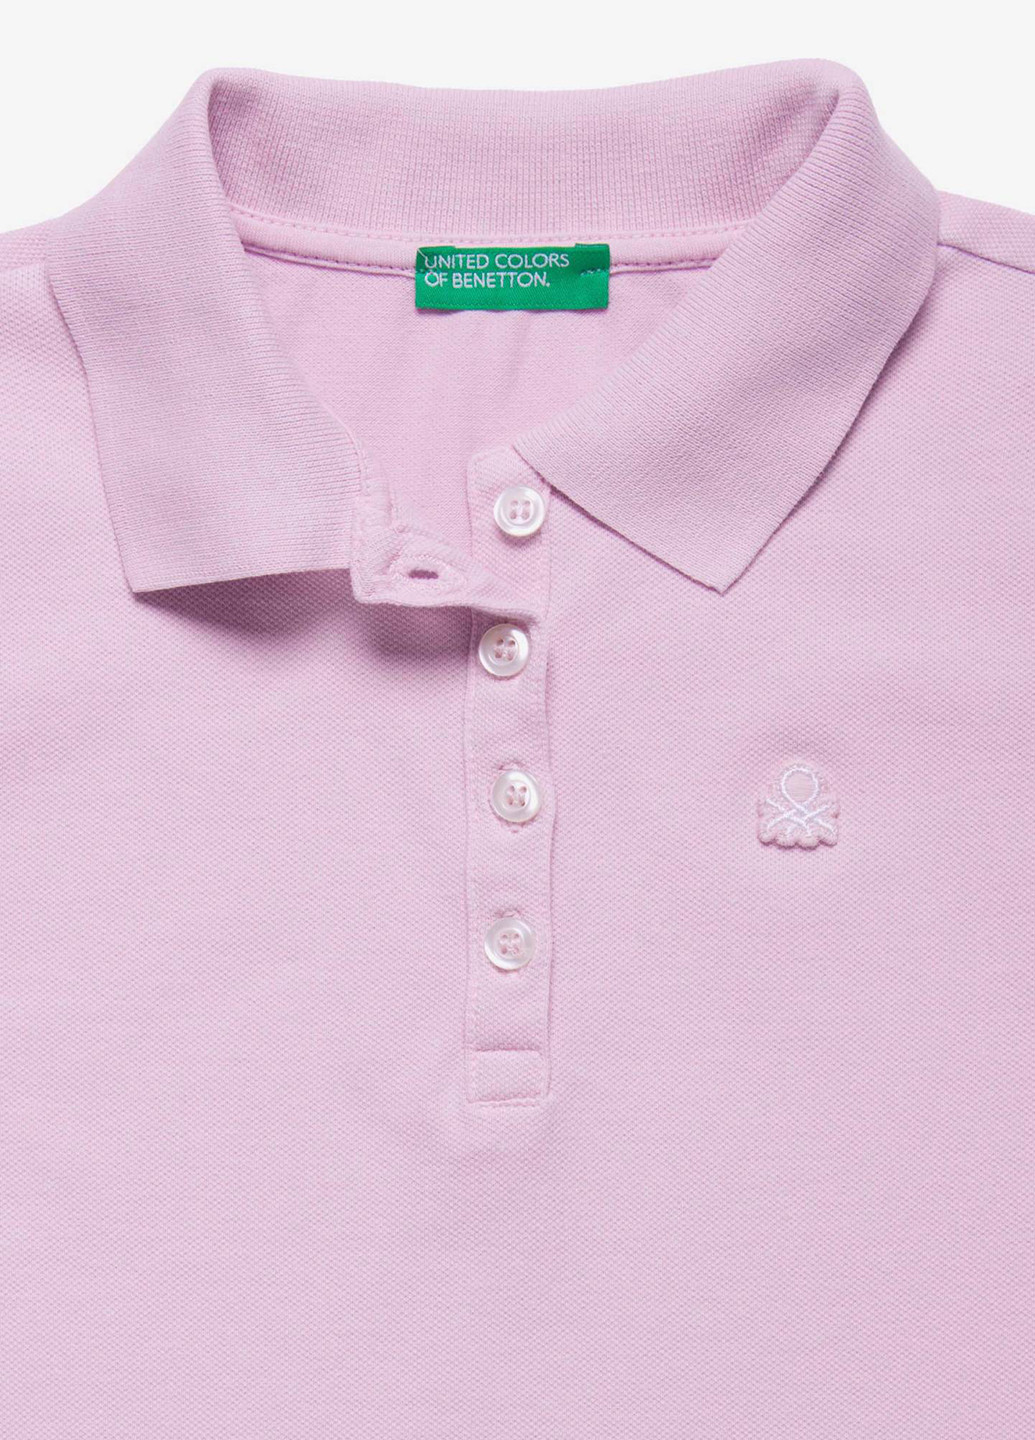 Сиреневая детская футболка-поло для девочки United Colors of Benetton однотонная